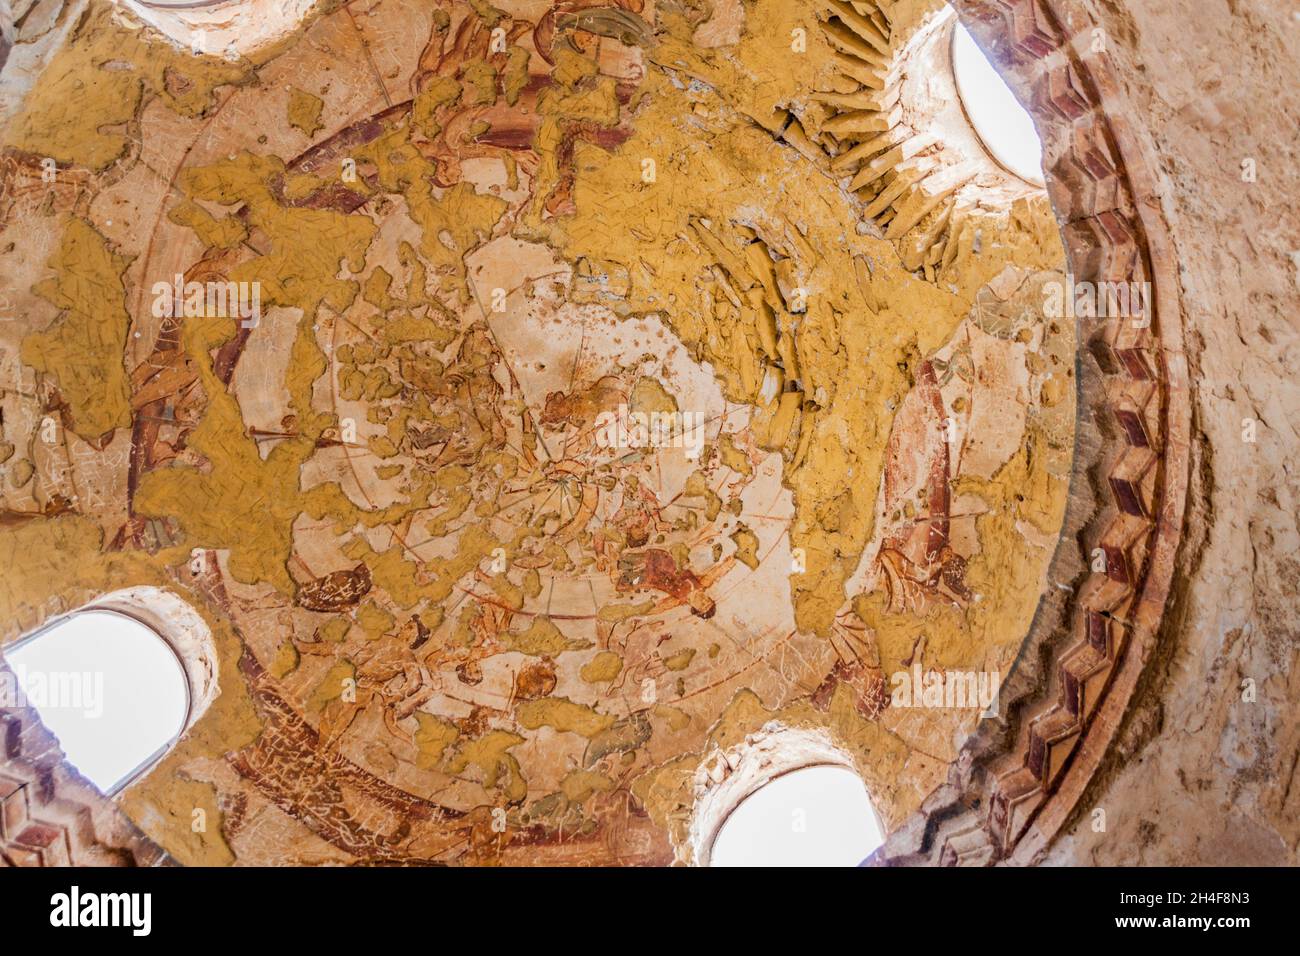 QUSAYR AMRA, JORDANIE - 3 AVRIL 2017 : constellations et zodiaque peintes sur le dôme de Qusayr Amra parfois Quseir Amra ou Qasr Amra , un des dese Banque D'Images